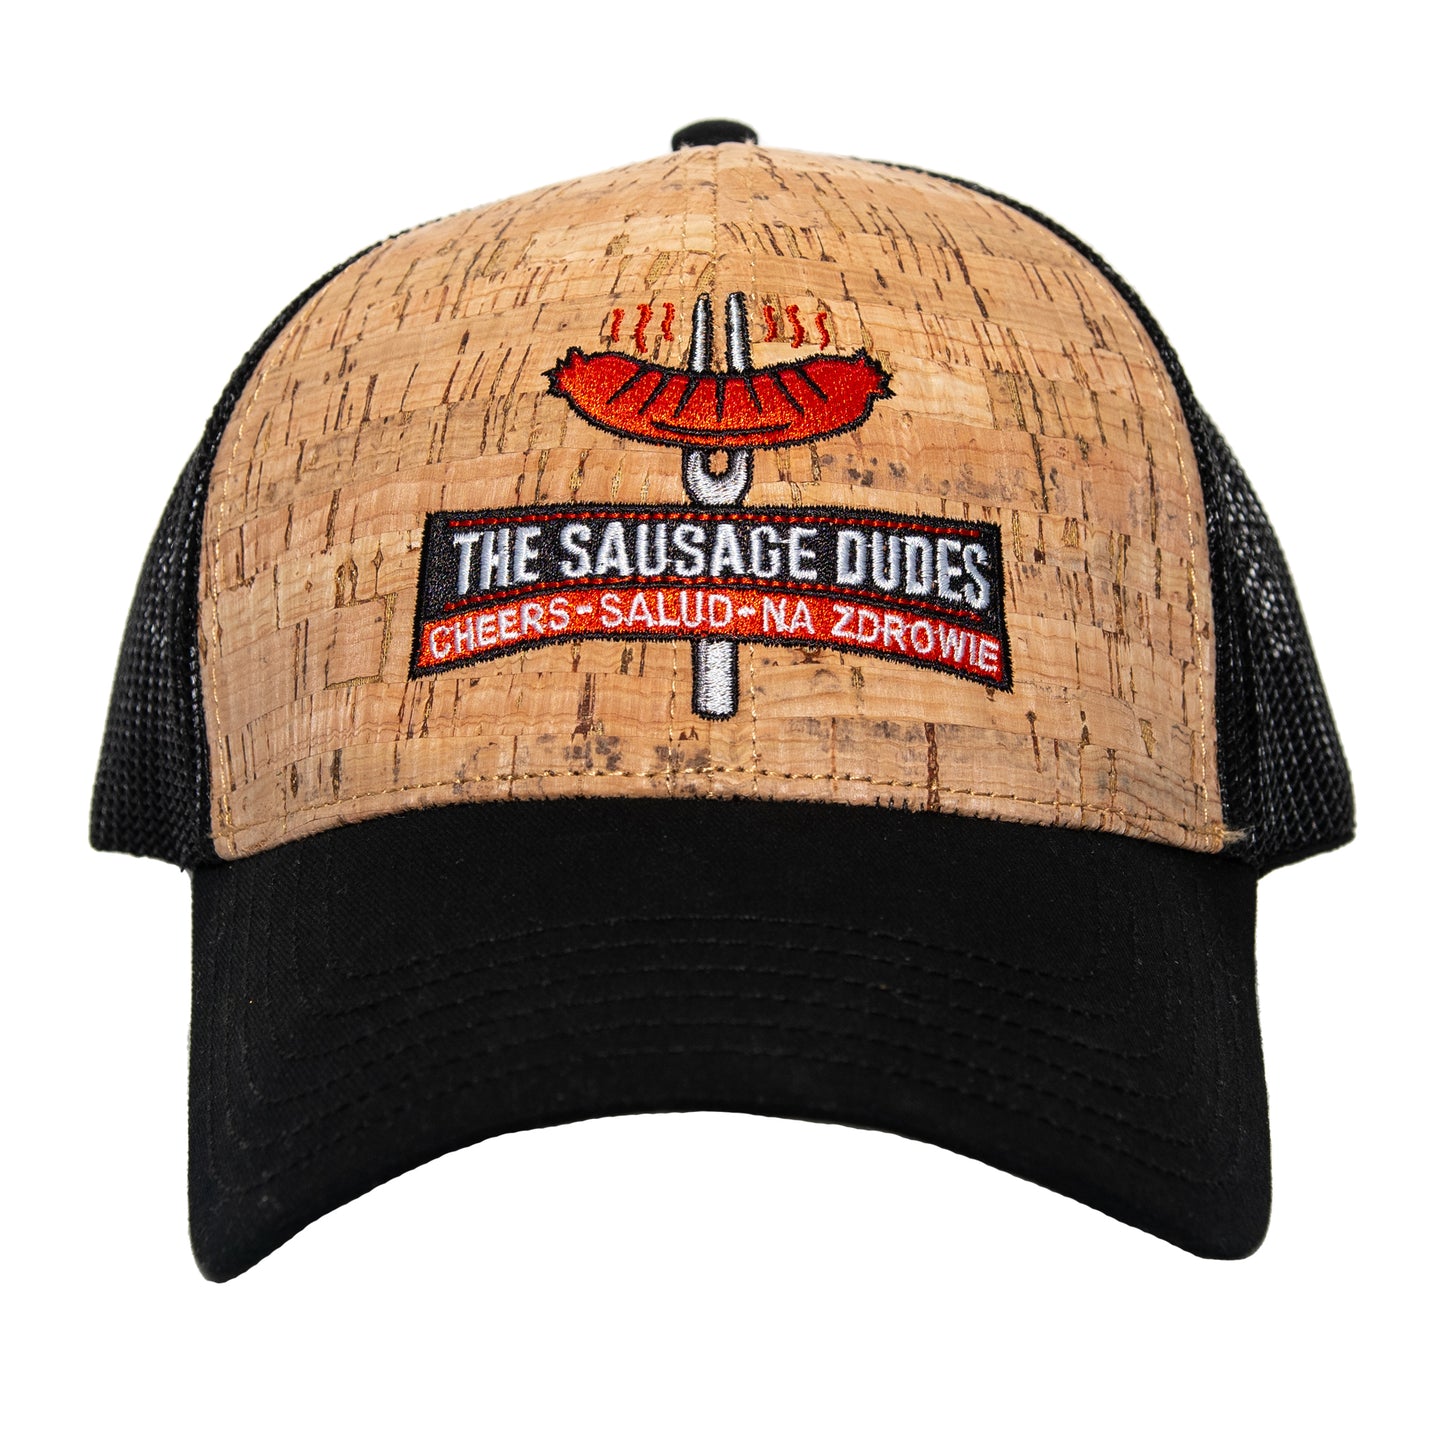 The Sausage Dudes Cork Trucker Hat